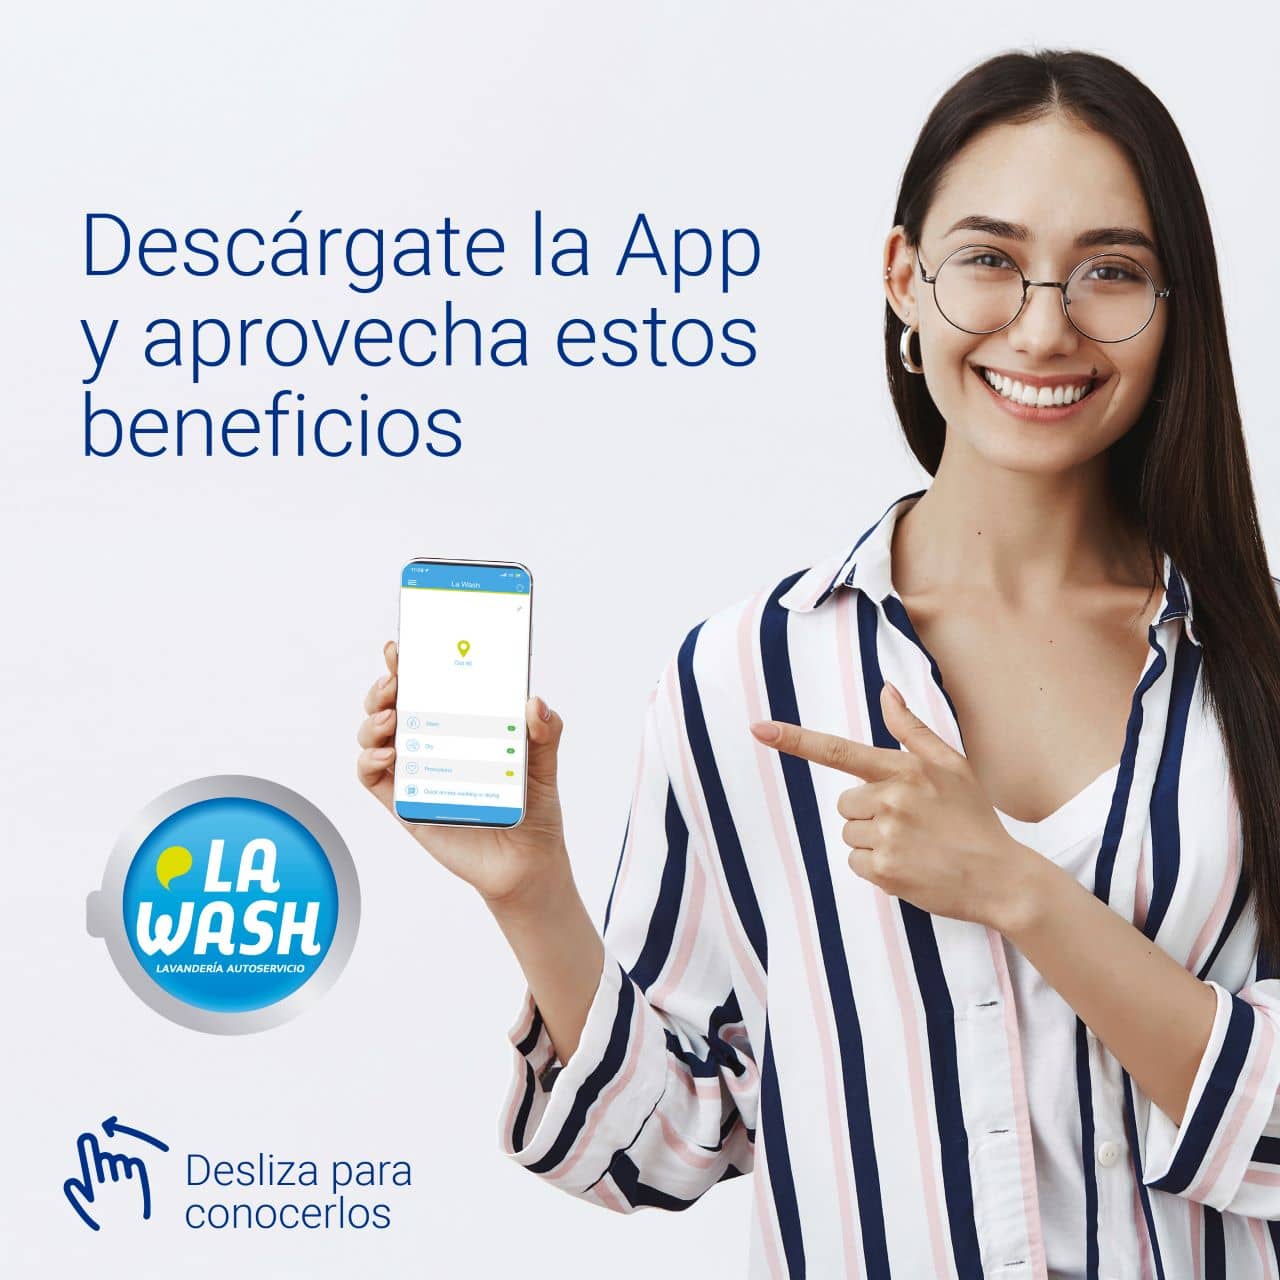 Ventajas de la App en lavanderías autoservicio La Wash